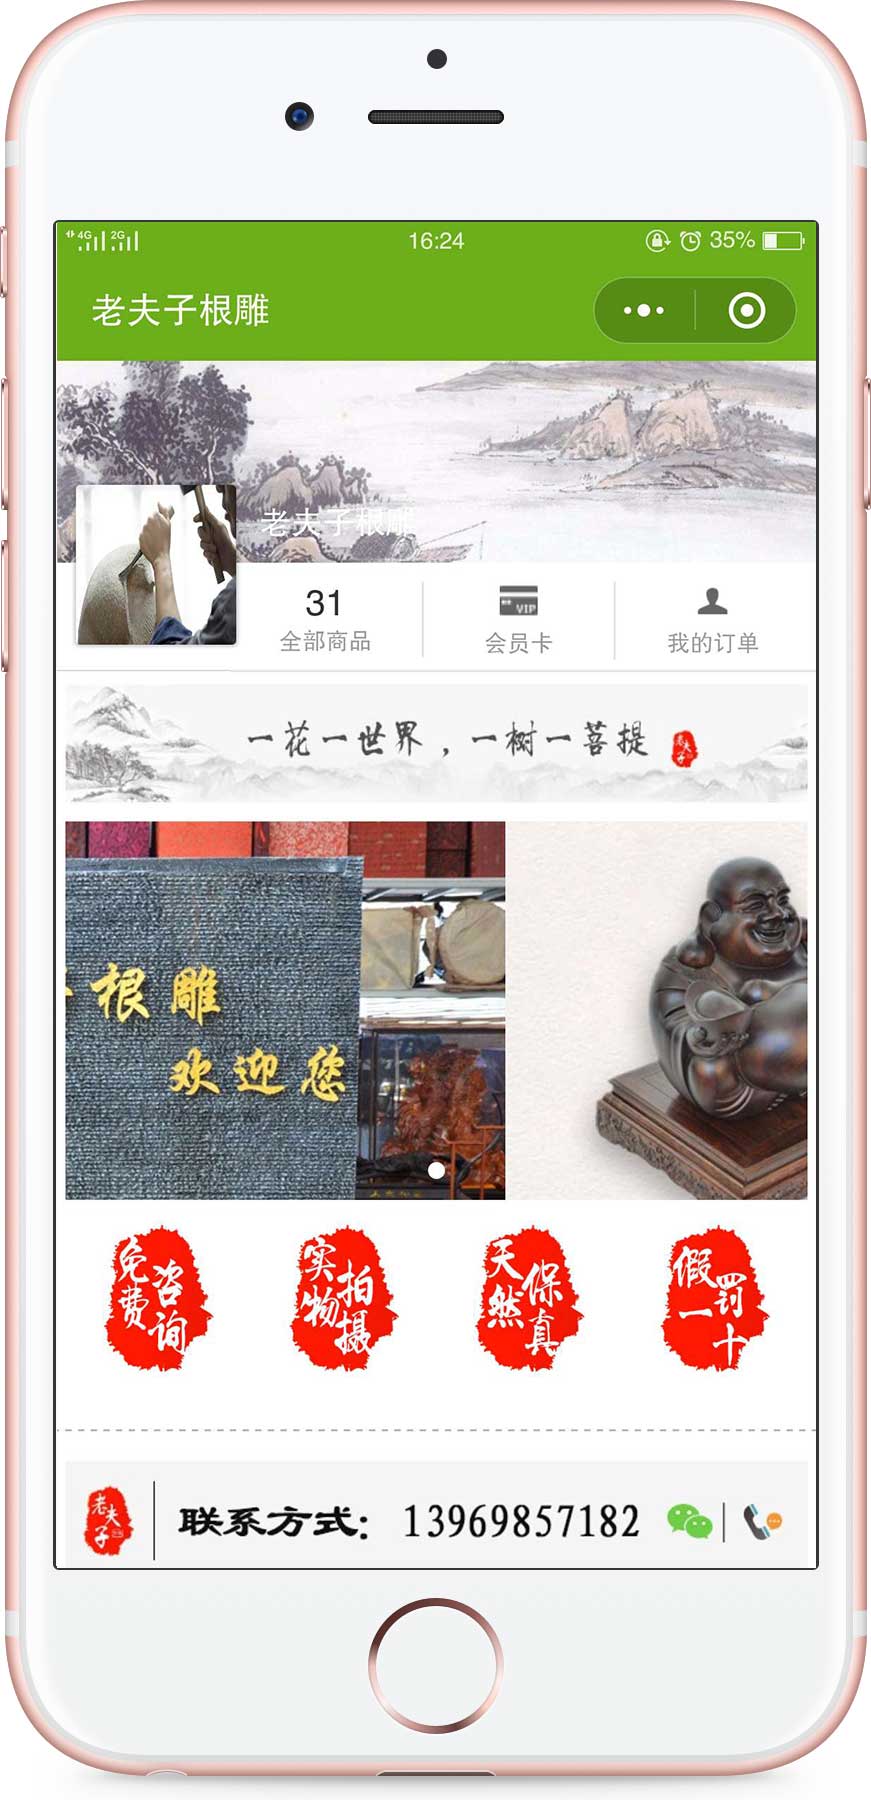 上海老夫子根雕木雕红木家居批发零售